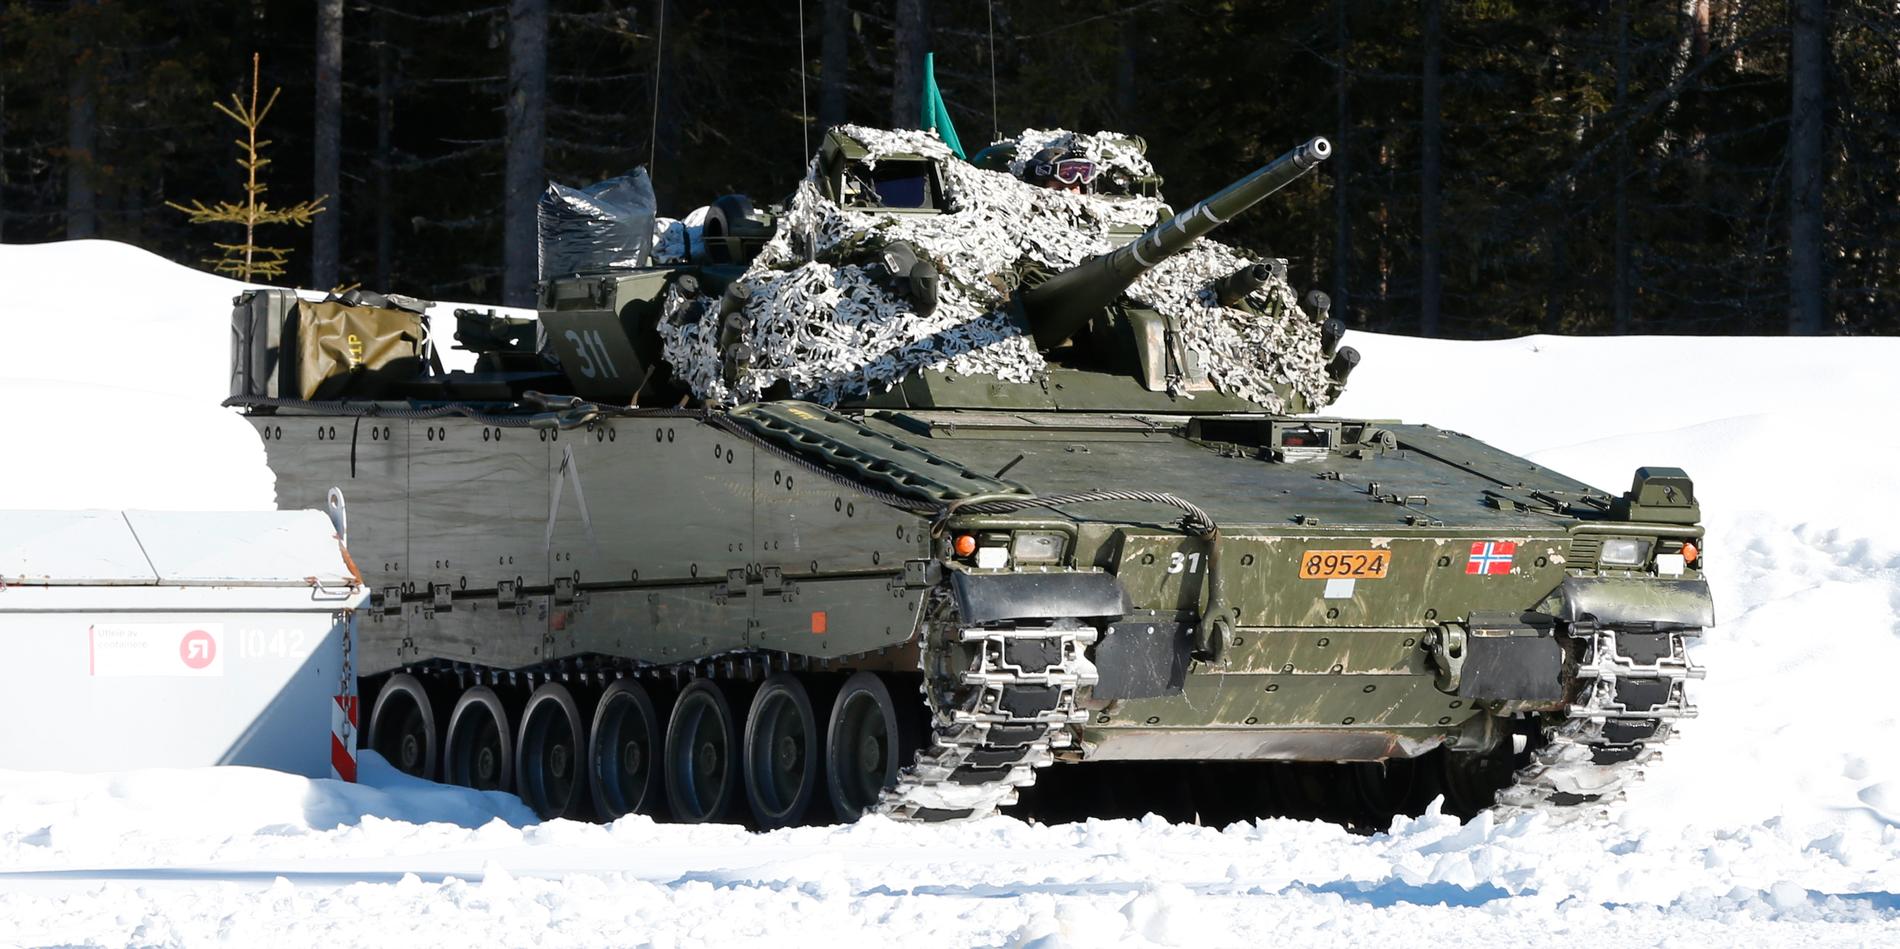 Norsk stridsvagn. Arkivbild